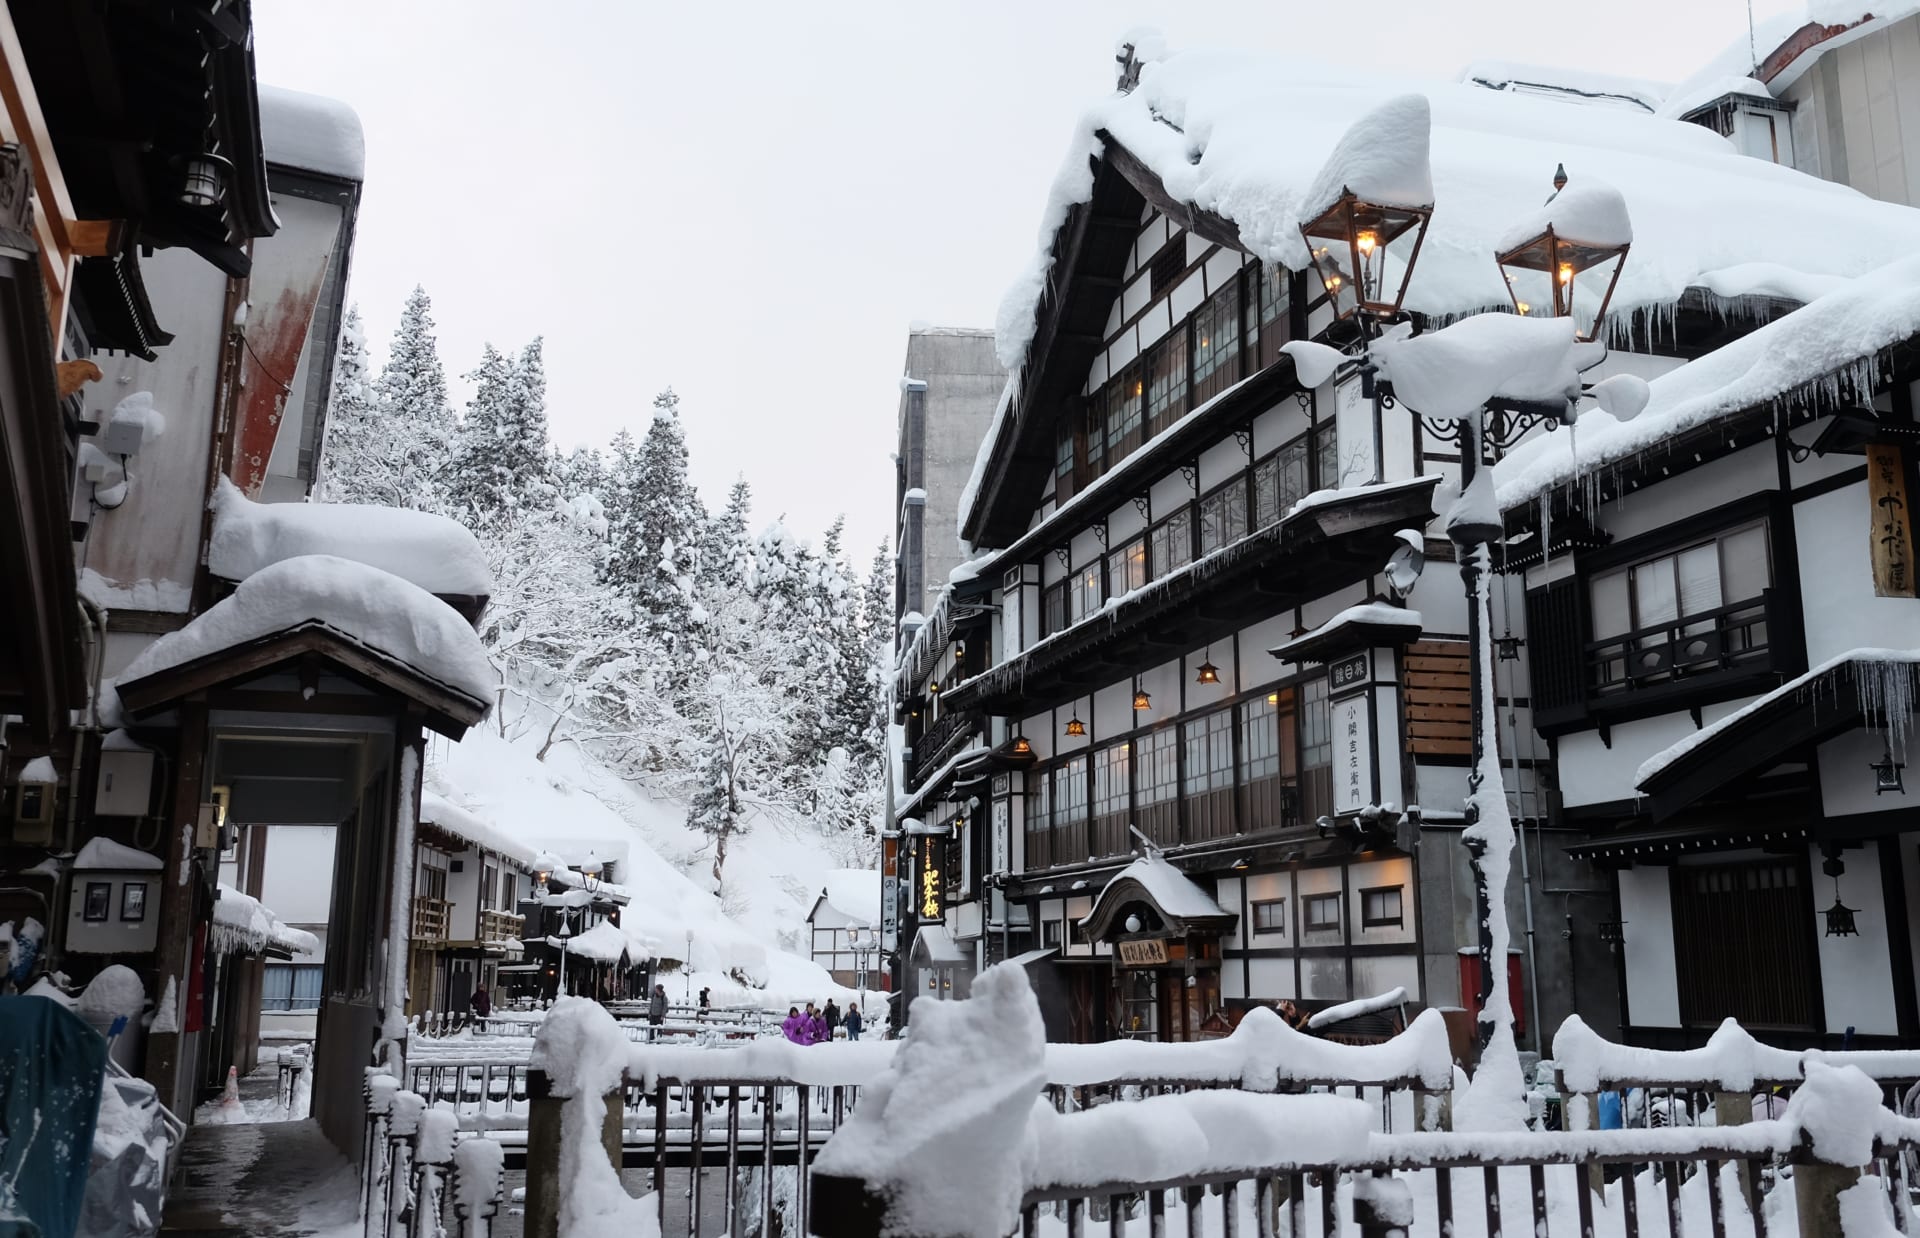 Onsen Ryokan Japanese inn Snow Winter GOYOH